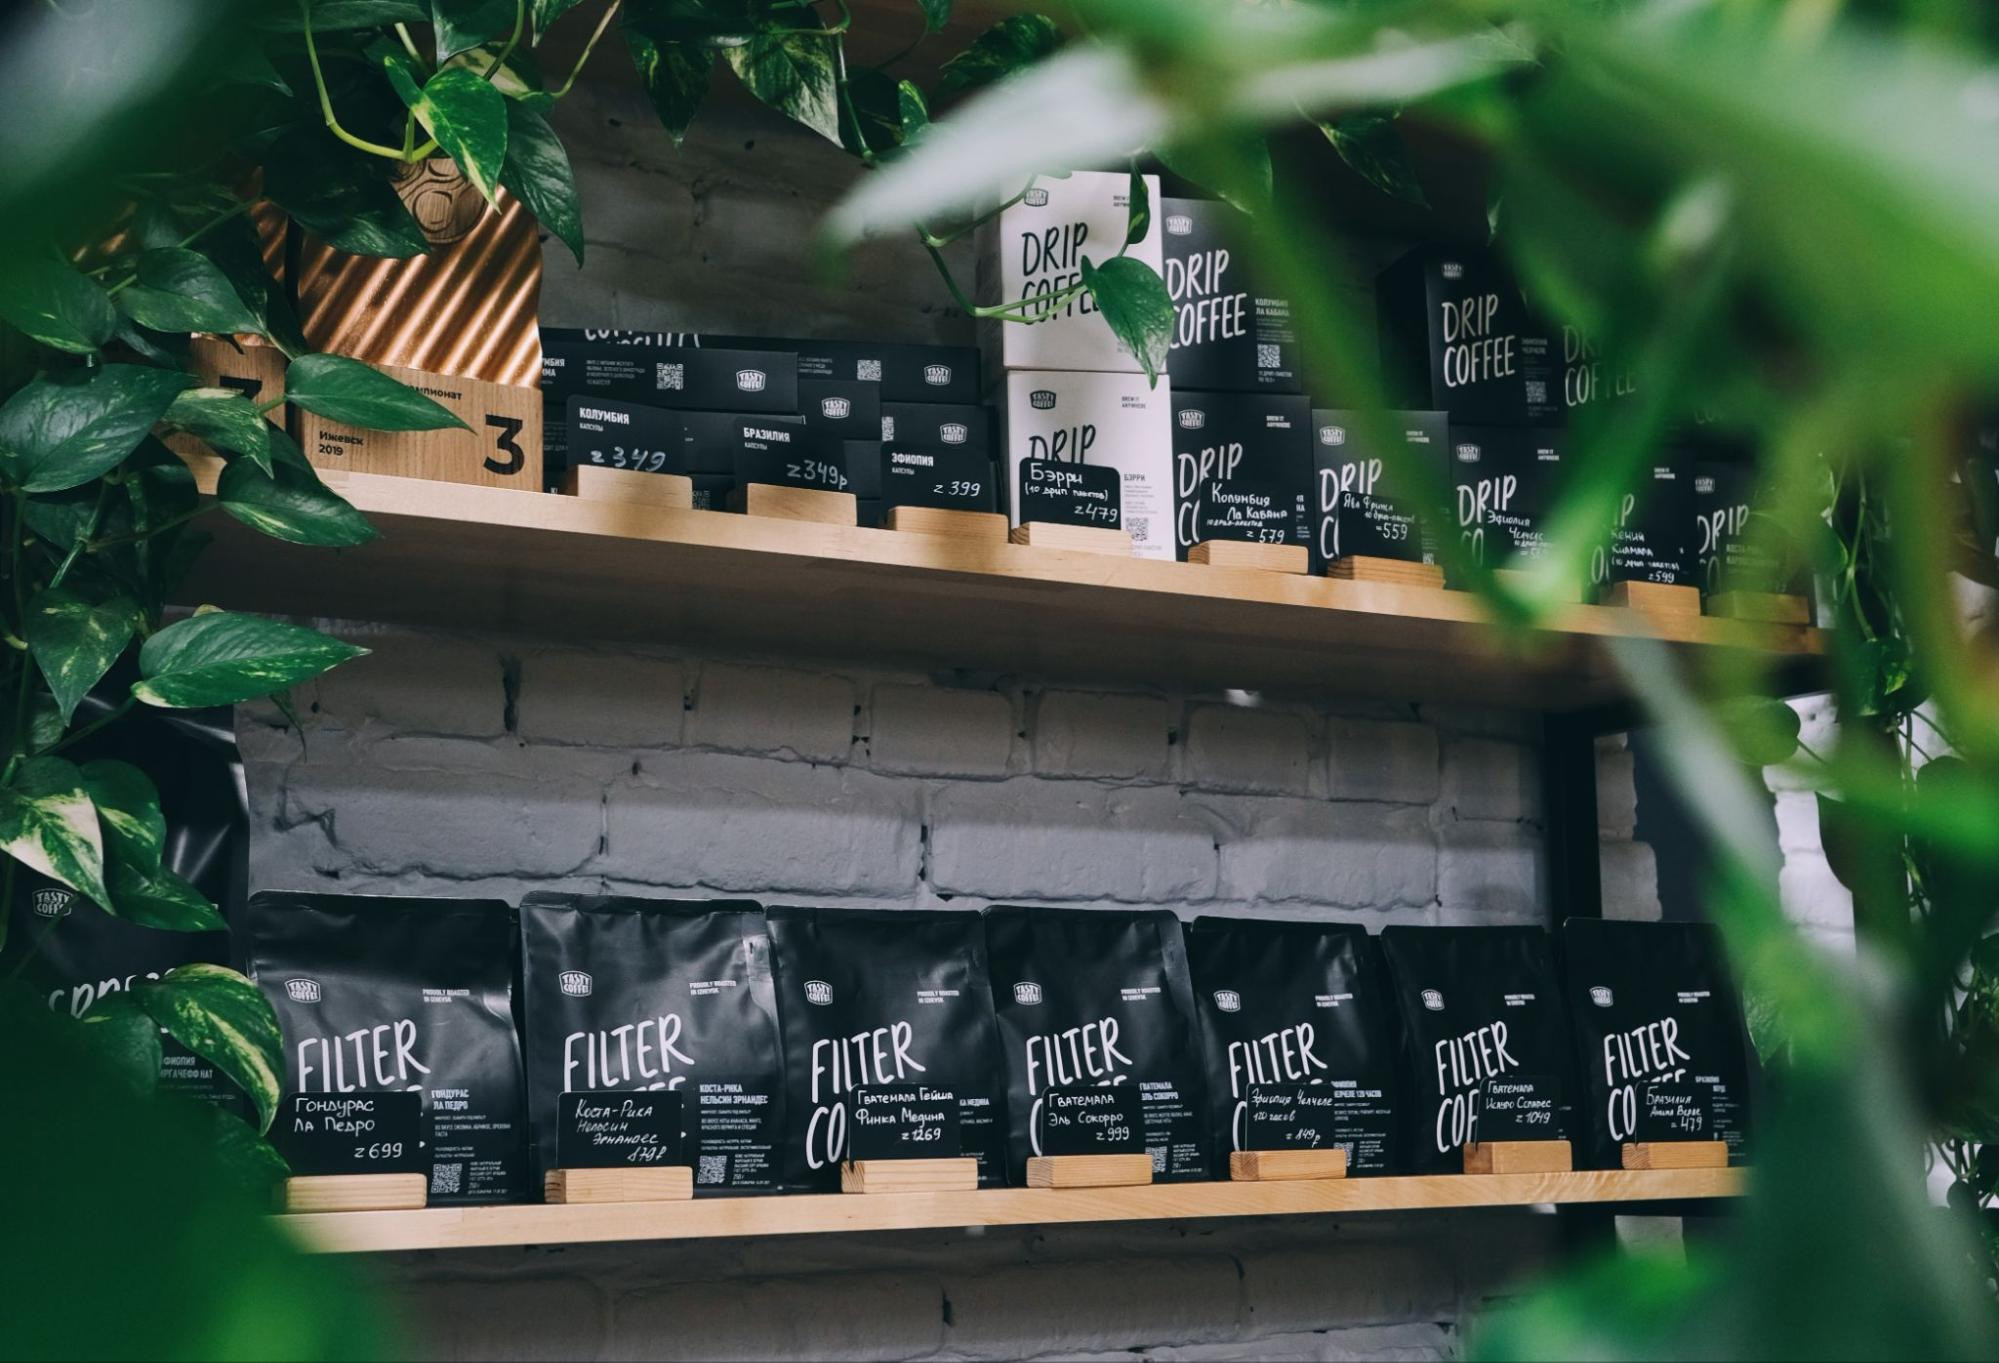 Кофе в пачках, дрип-пакеты и пуроверы: как продажа товаров в кофейне помогает увеличить доход